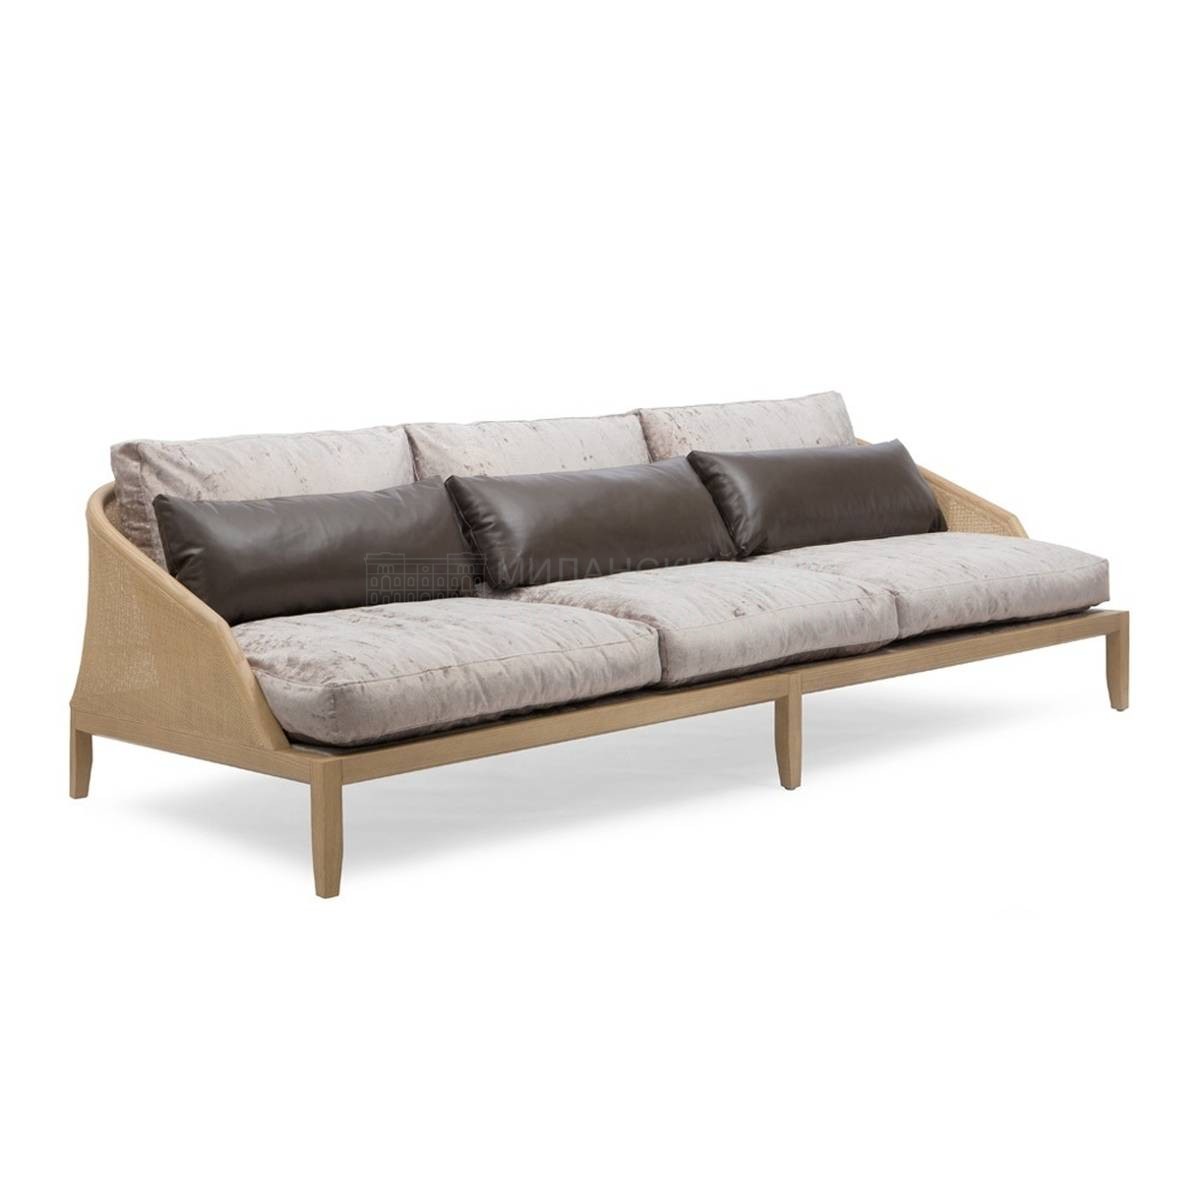 Прямой диван Grace/834/D из Италии фабрики POTOCCO